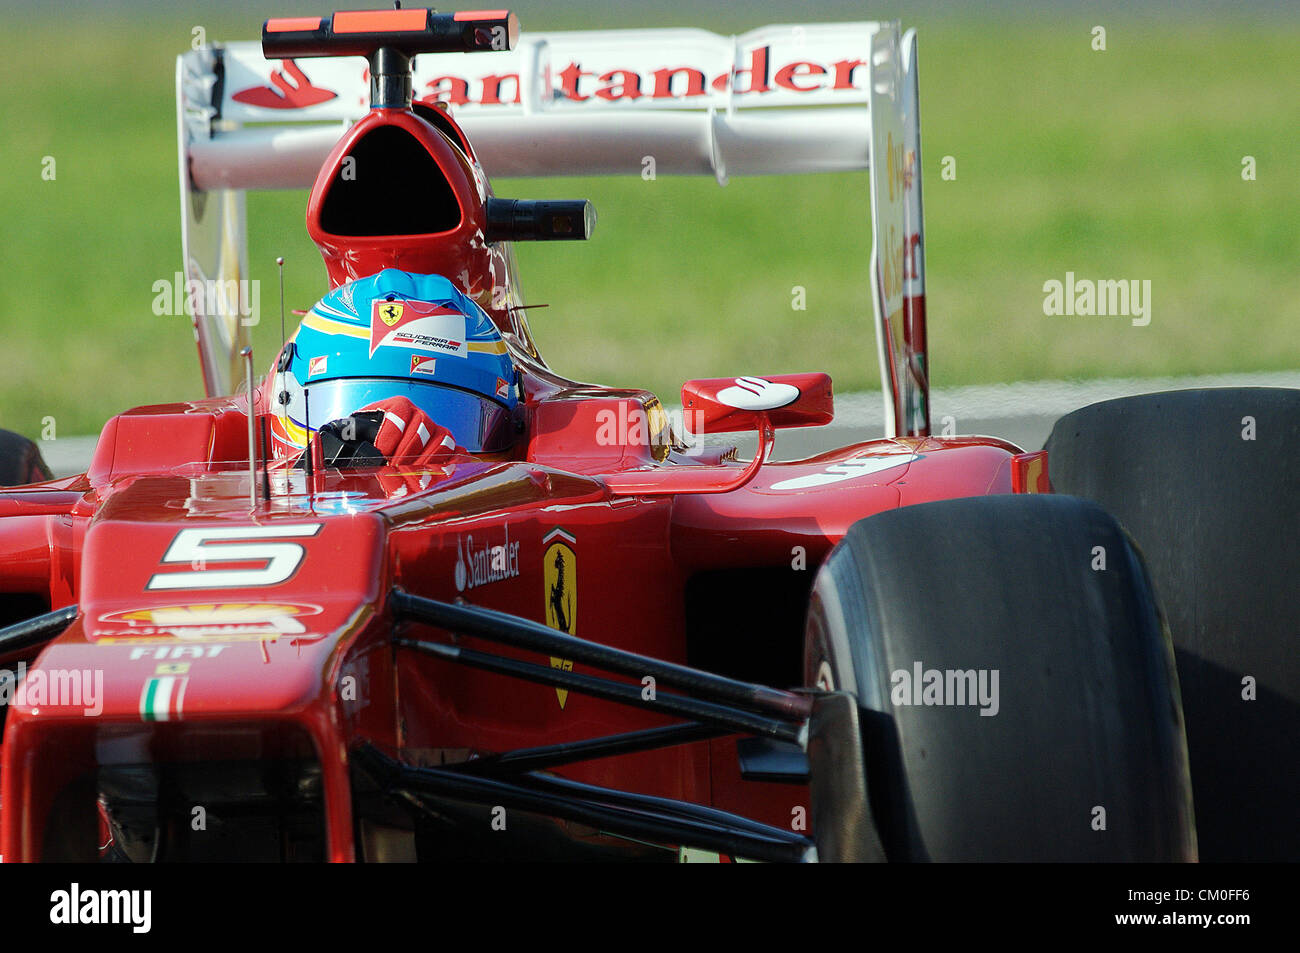 Monza, Italie. 8 septembre 2012. Ferrari de Fernando Alonso en action lors de la journée de qualification GP d'Italie 2012. Banque D'Images